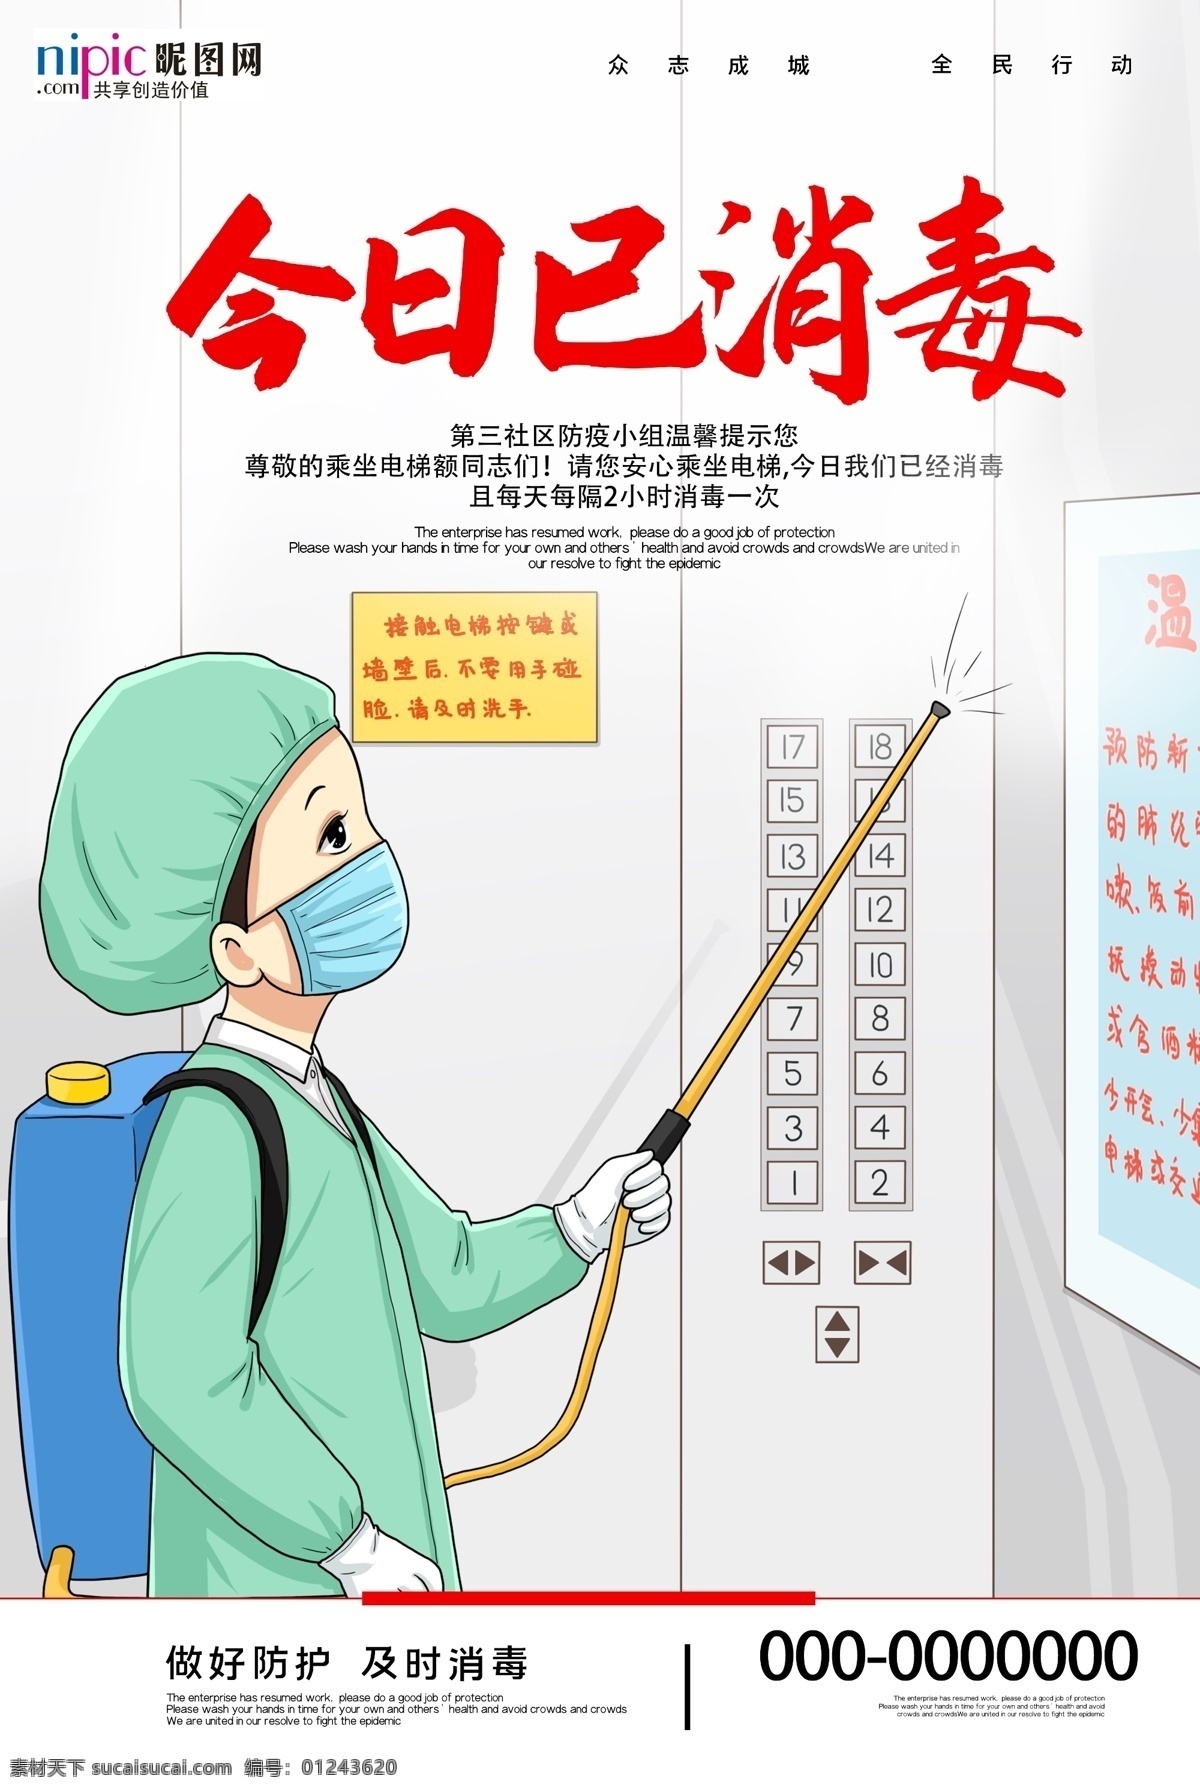 预防 武汉 冠状 肺炎 流感 病毒 海报 电梯 消毒液 酒精 医院 护士